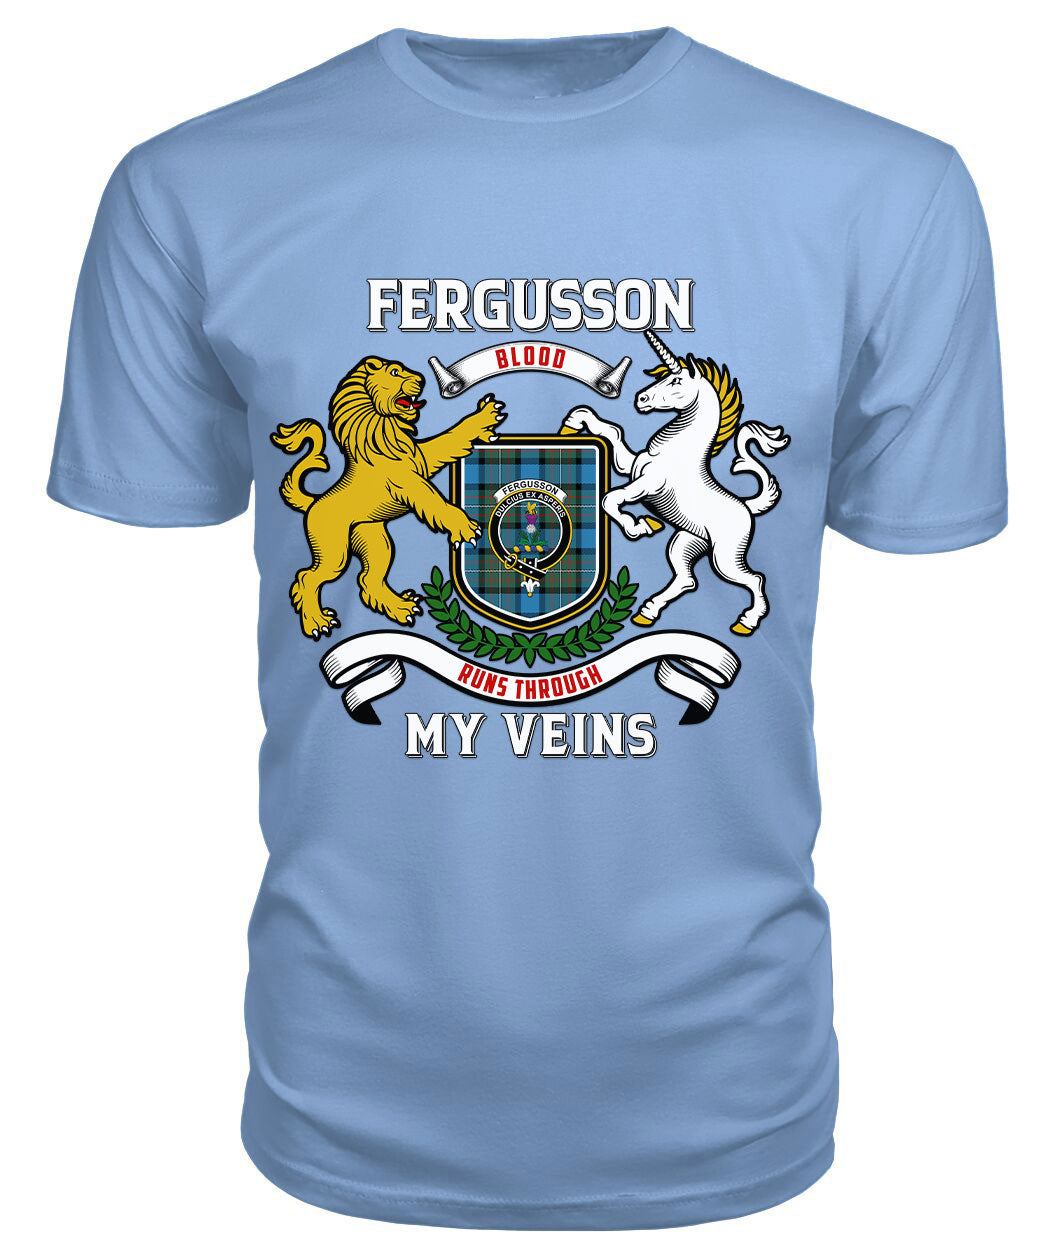 Fergusson Ancient Tartan Crest 2D T-shirt - Blood Runs Through My Veins Style